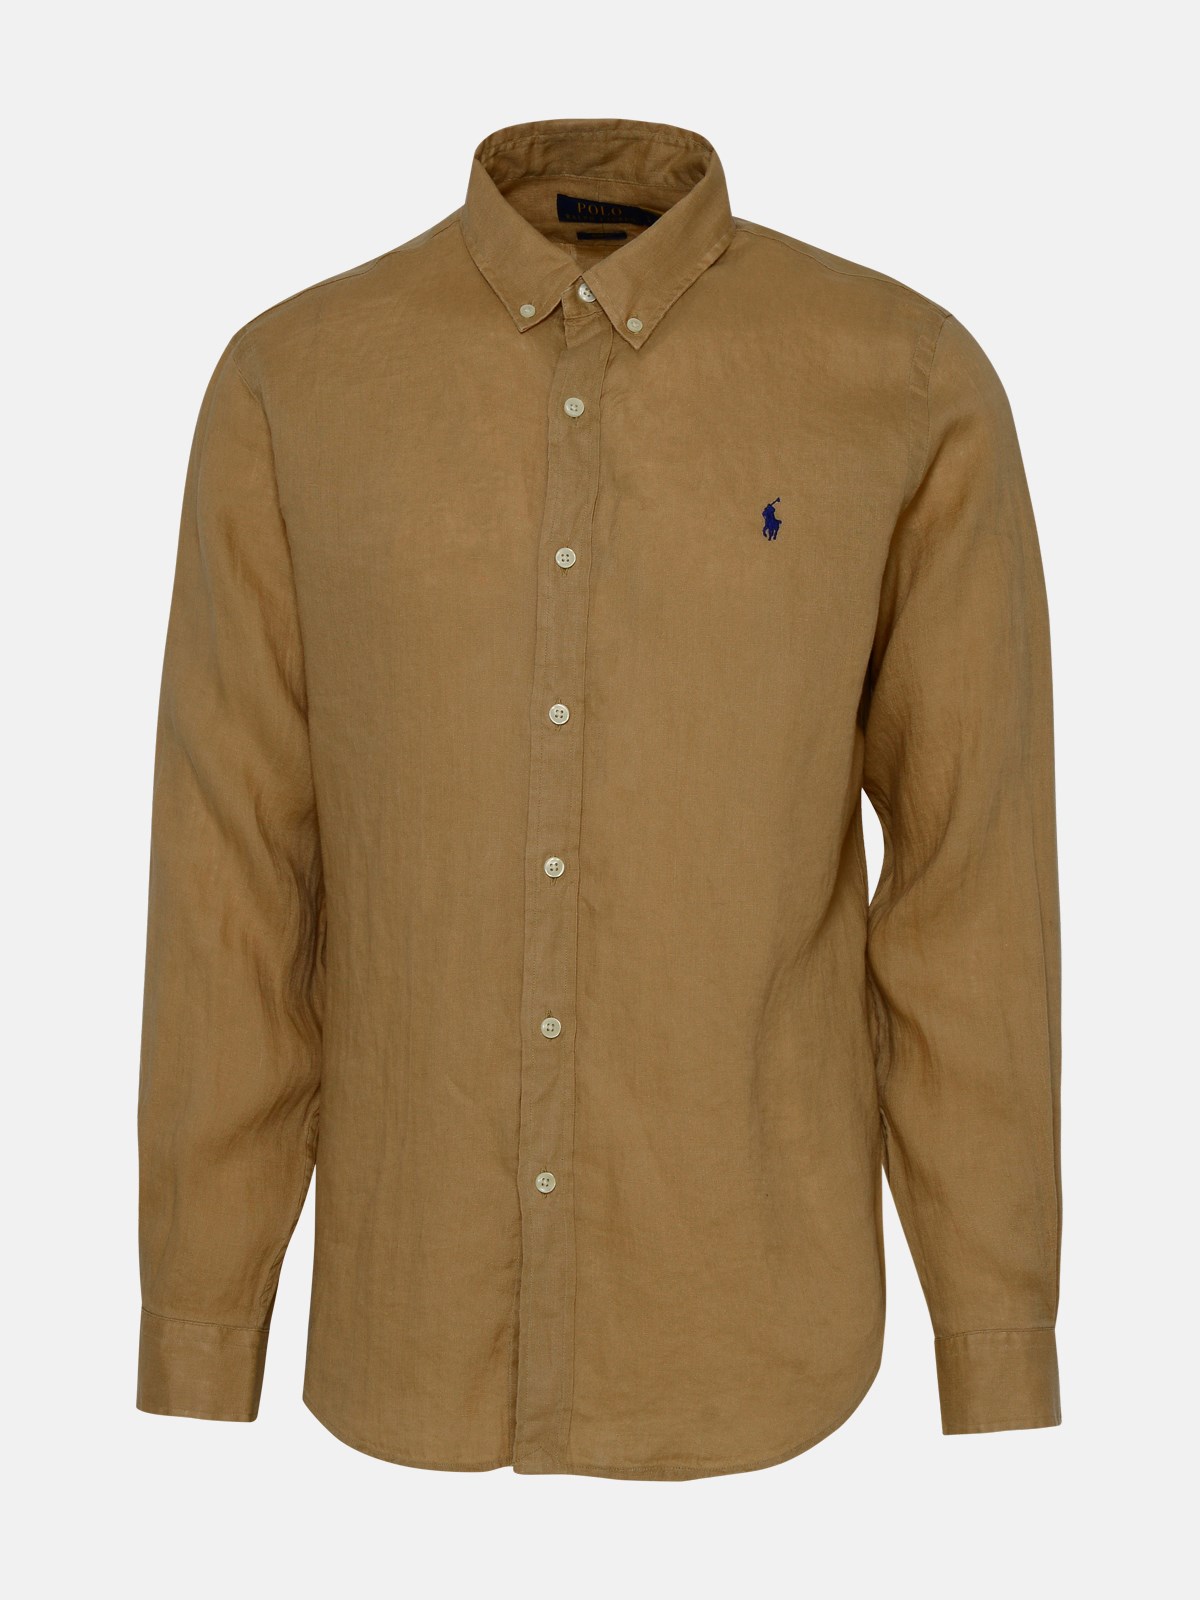 Polo Ralph Lauren Beige Linen Shirt